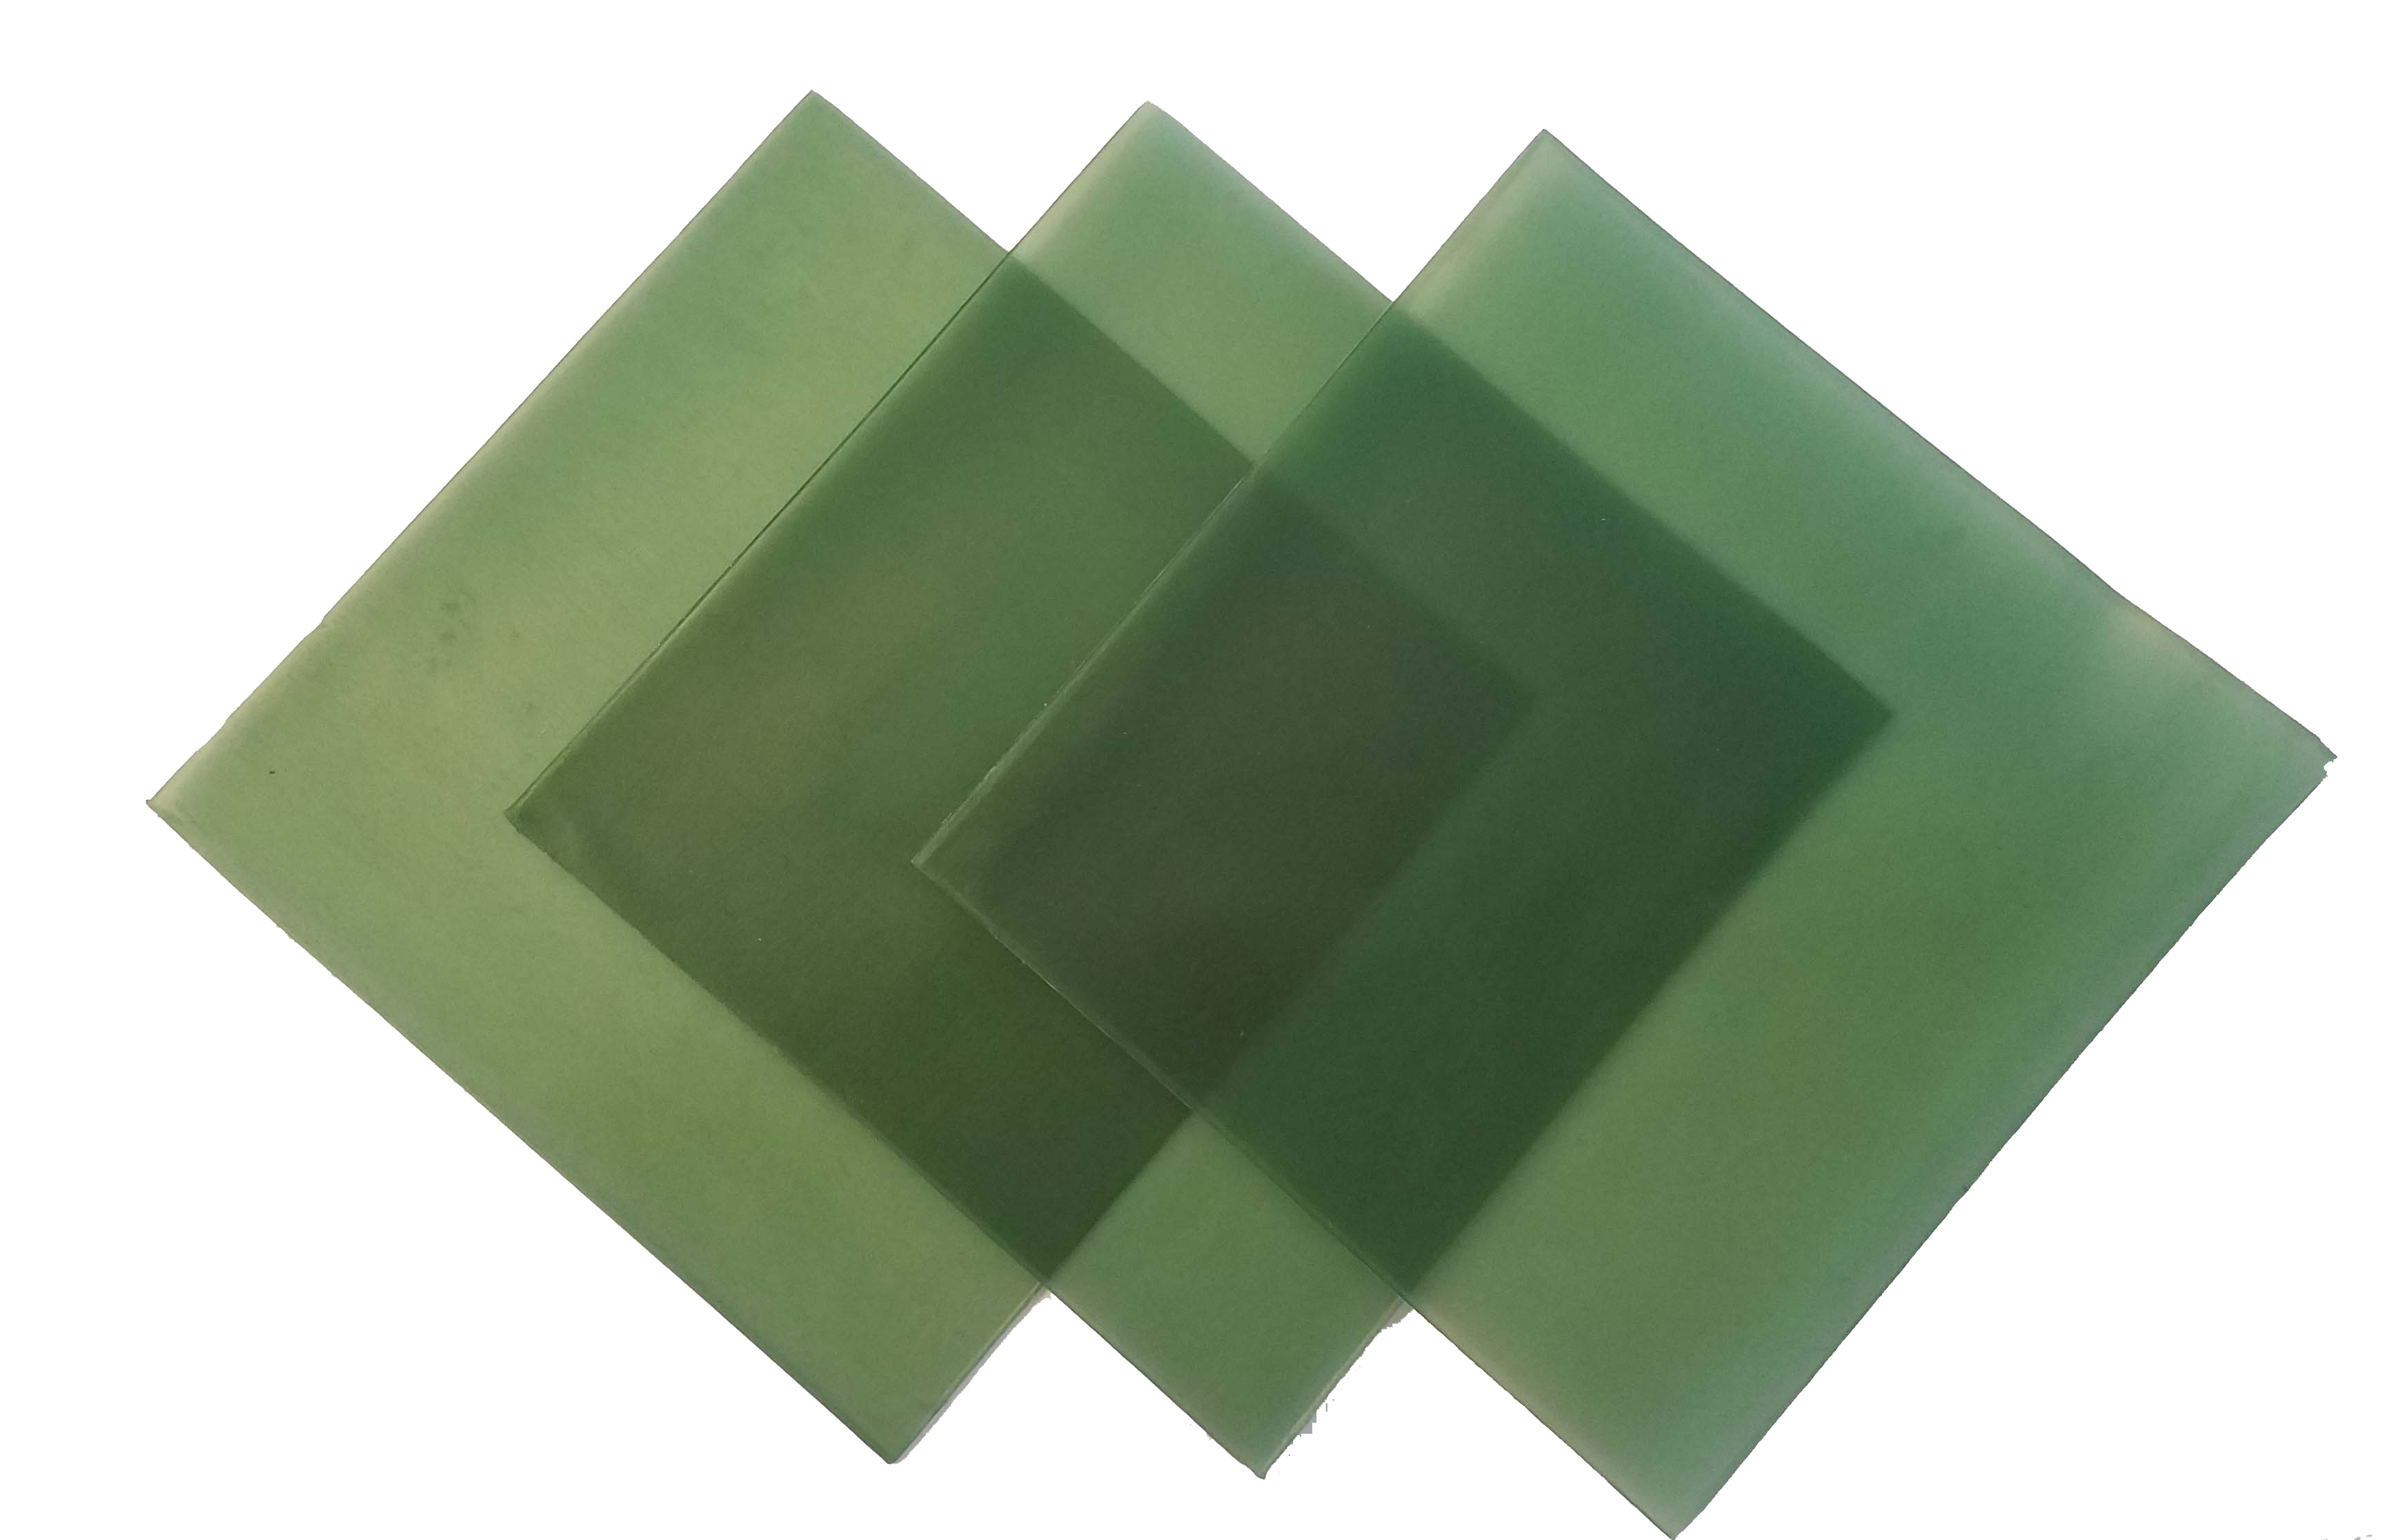 4\"x4\" sheet wax 26 gauge green